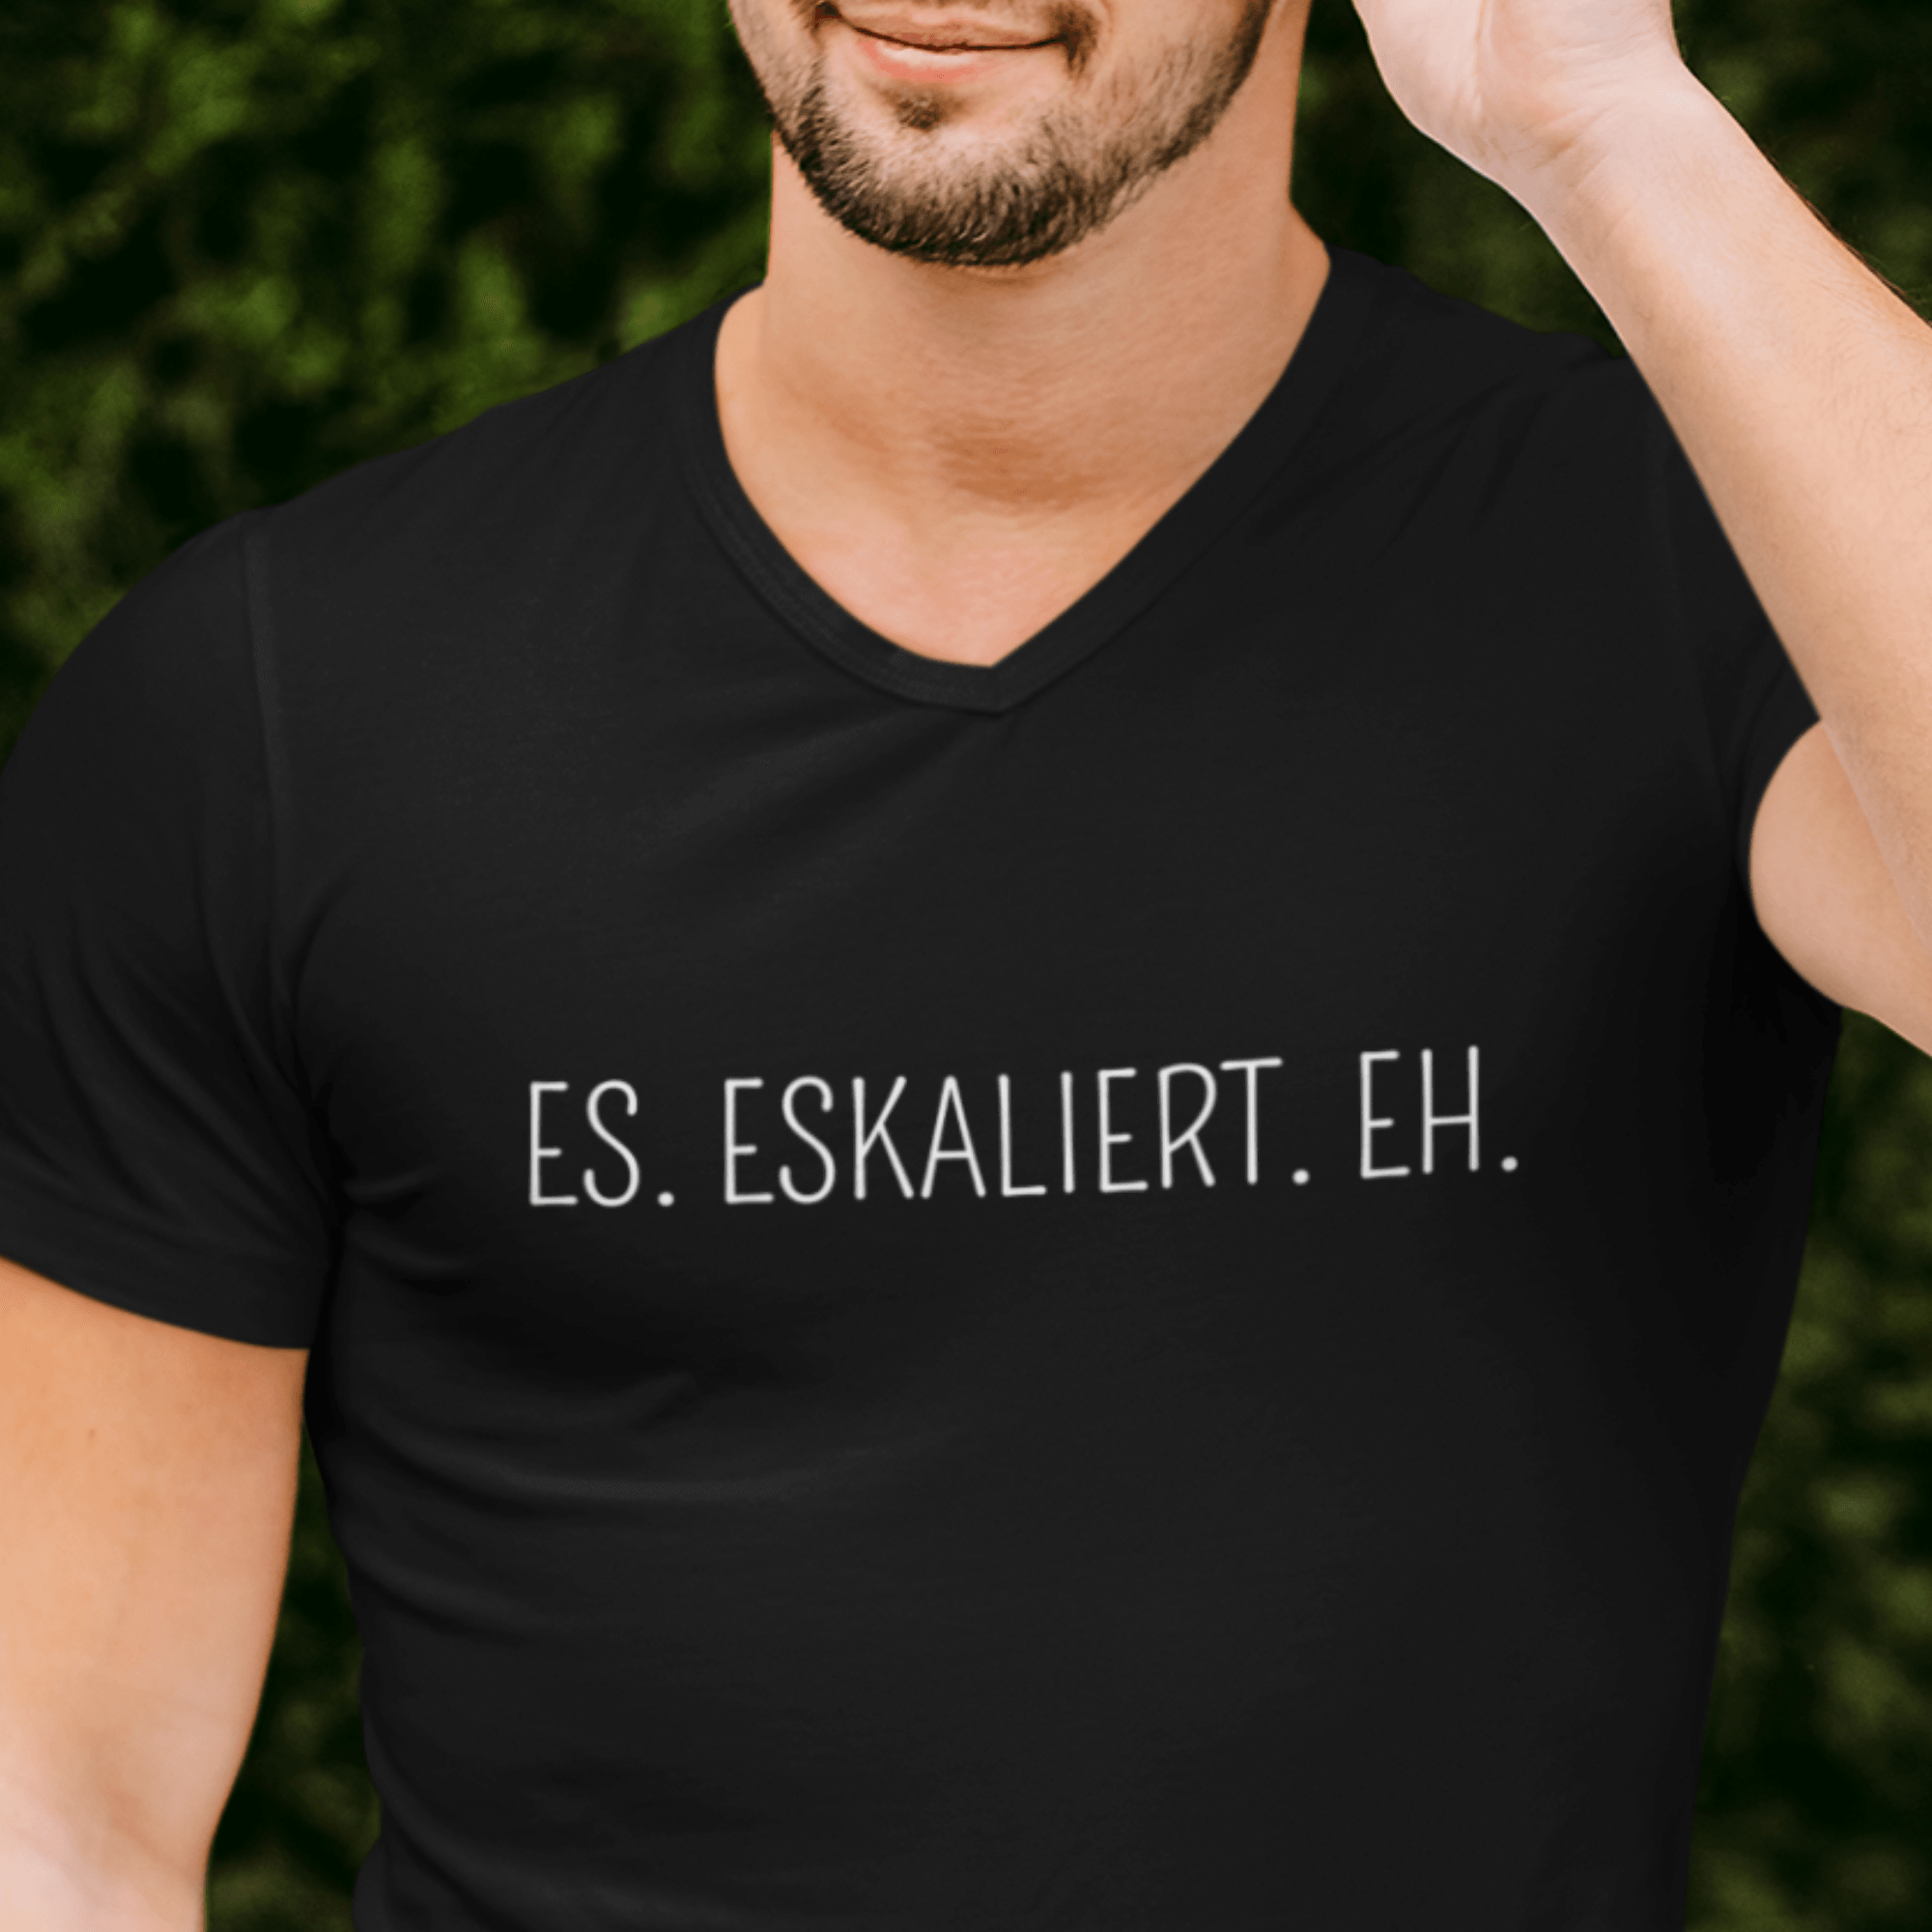 ES. ESKALIERT. EH. - Herren V-Neck Shirt - einschenken24.de